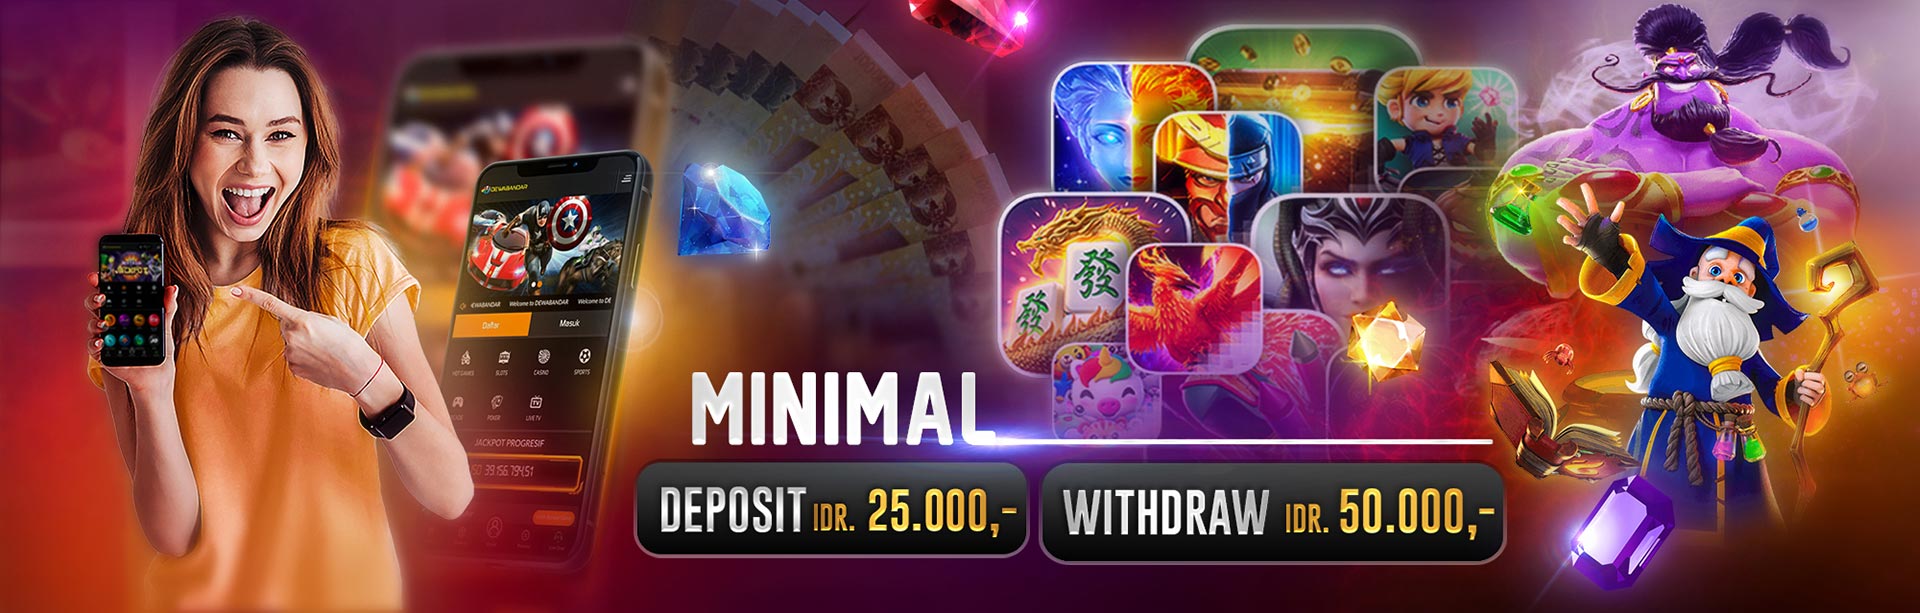 minimal deposit 25k dan withdraw 50k